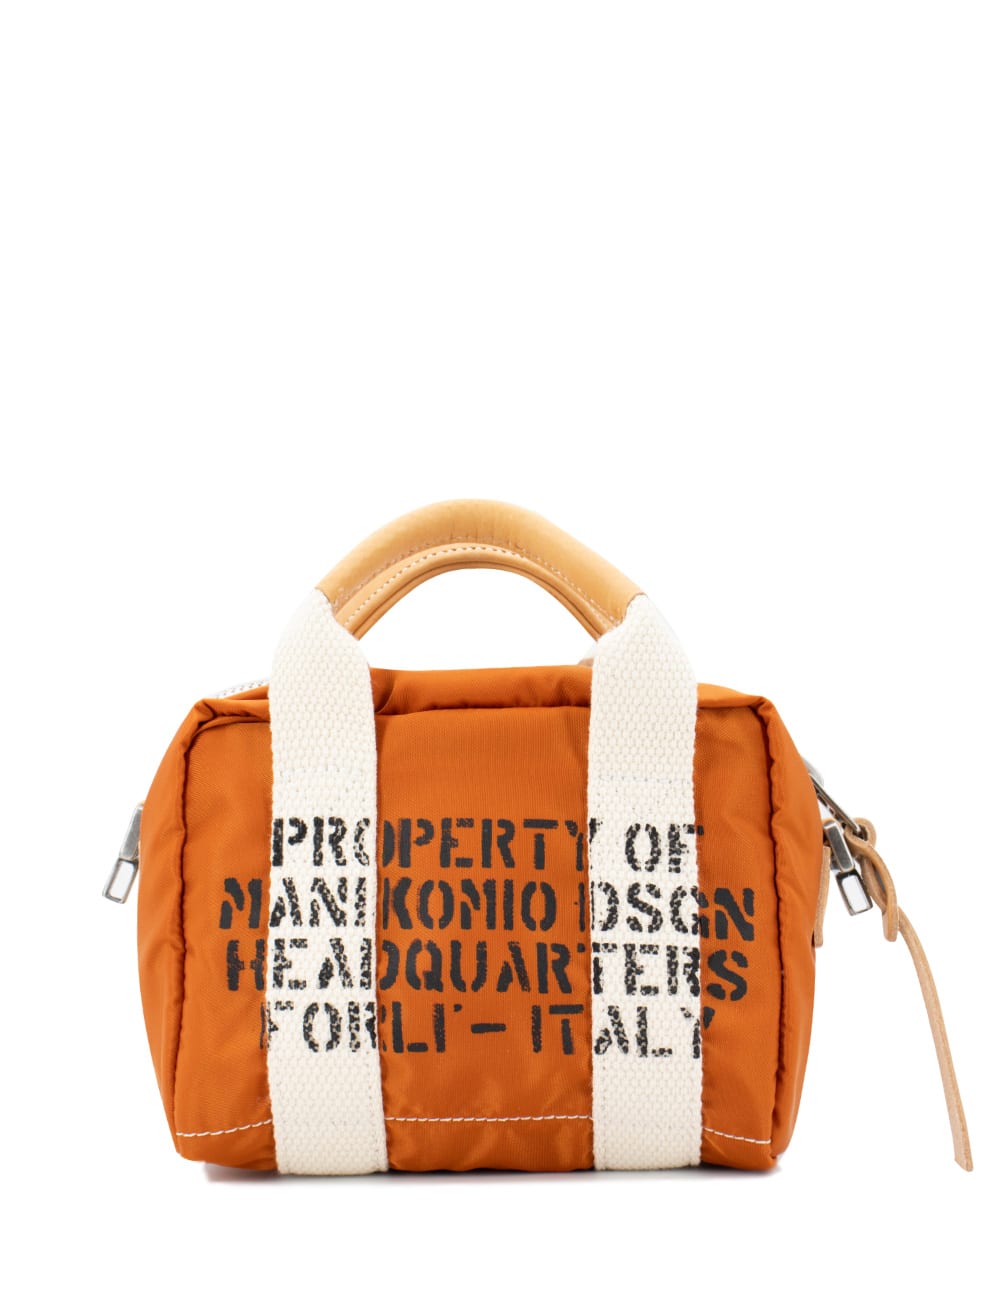 Manikomio Dsgn Bag In Orange